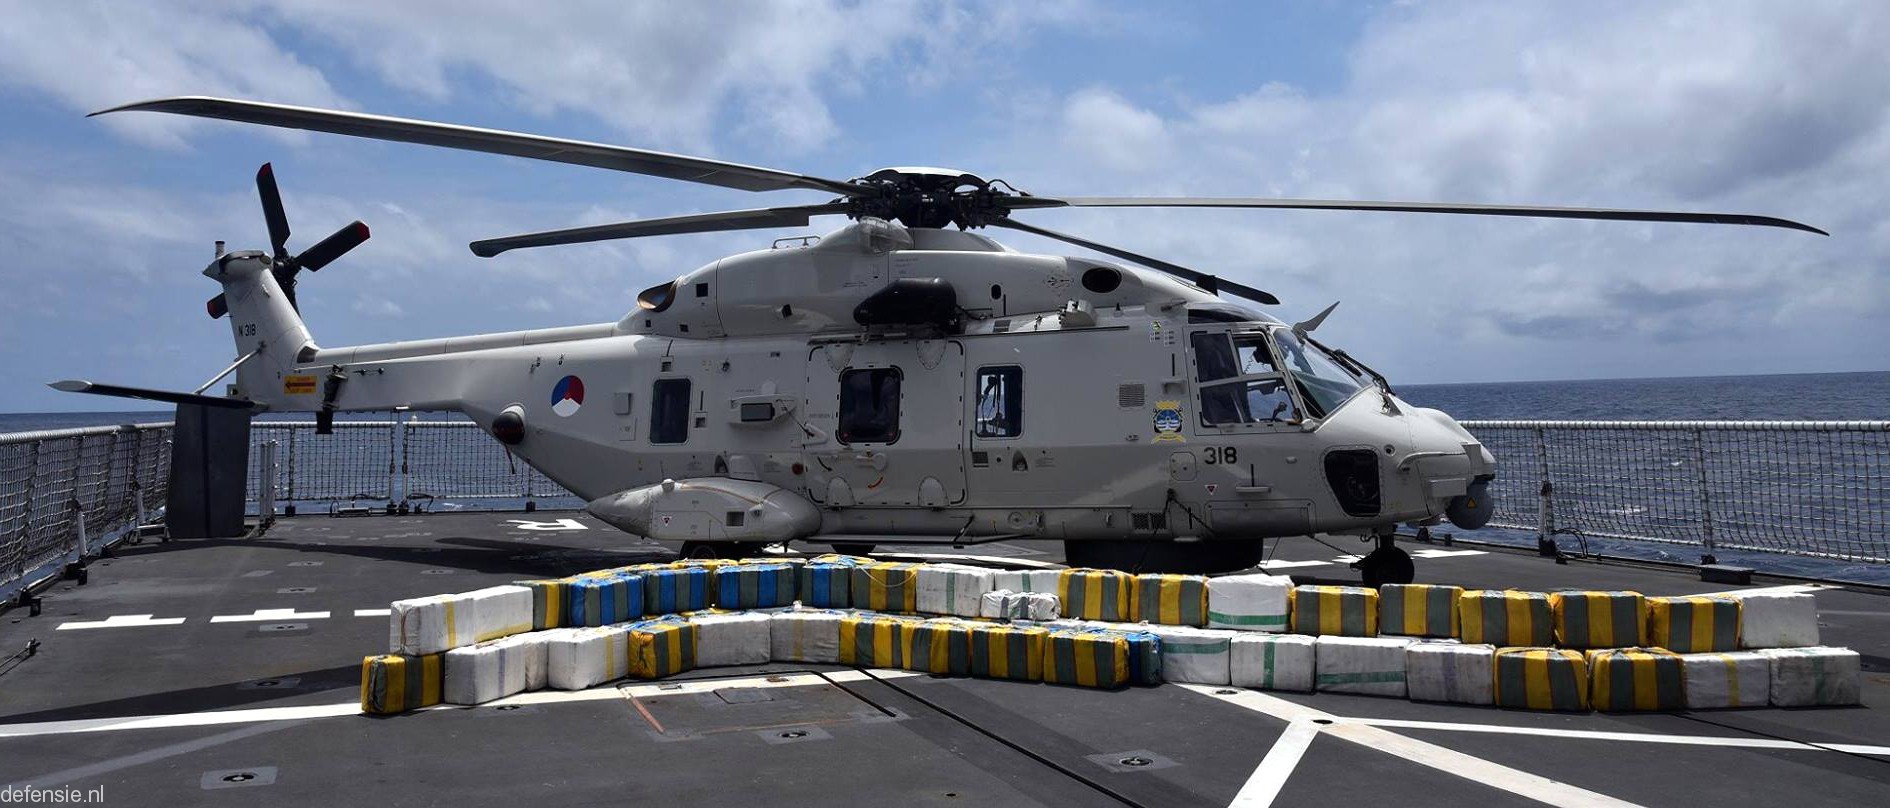 nh90 nfh helicopter royal netherlands navy koninklijke marine n-318 02